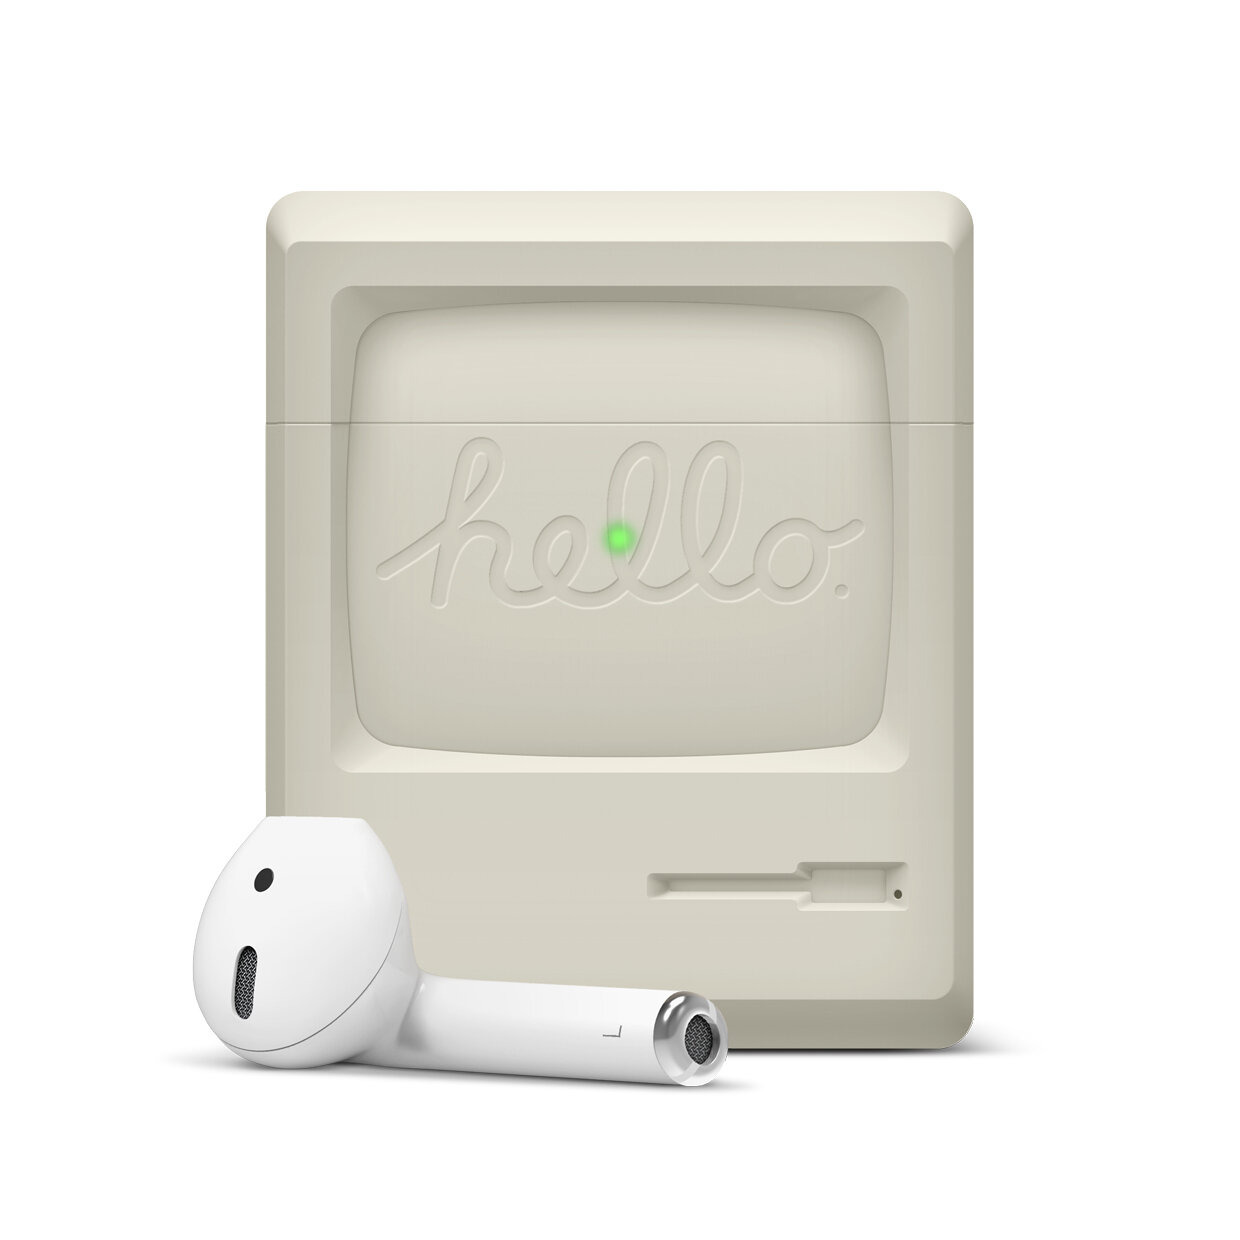 第一代麥金塔電腦造型的 AirPods 充電盒保護套 | AirPods, Apple News, AW3 Airpods, Elago | iPhone News 愛瘋了